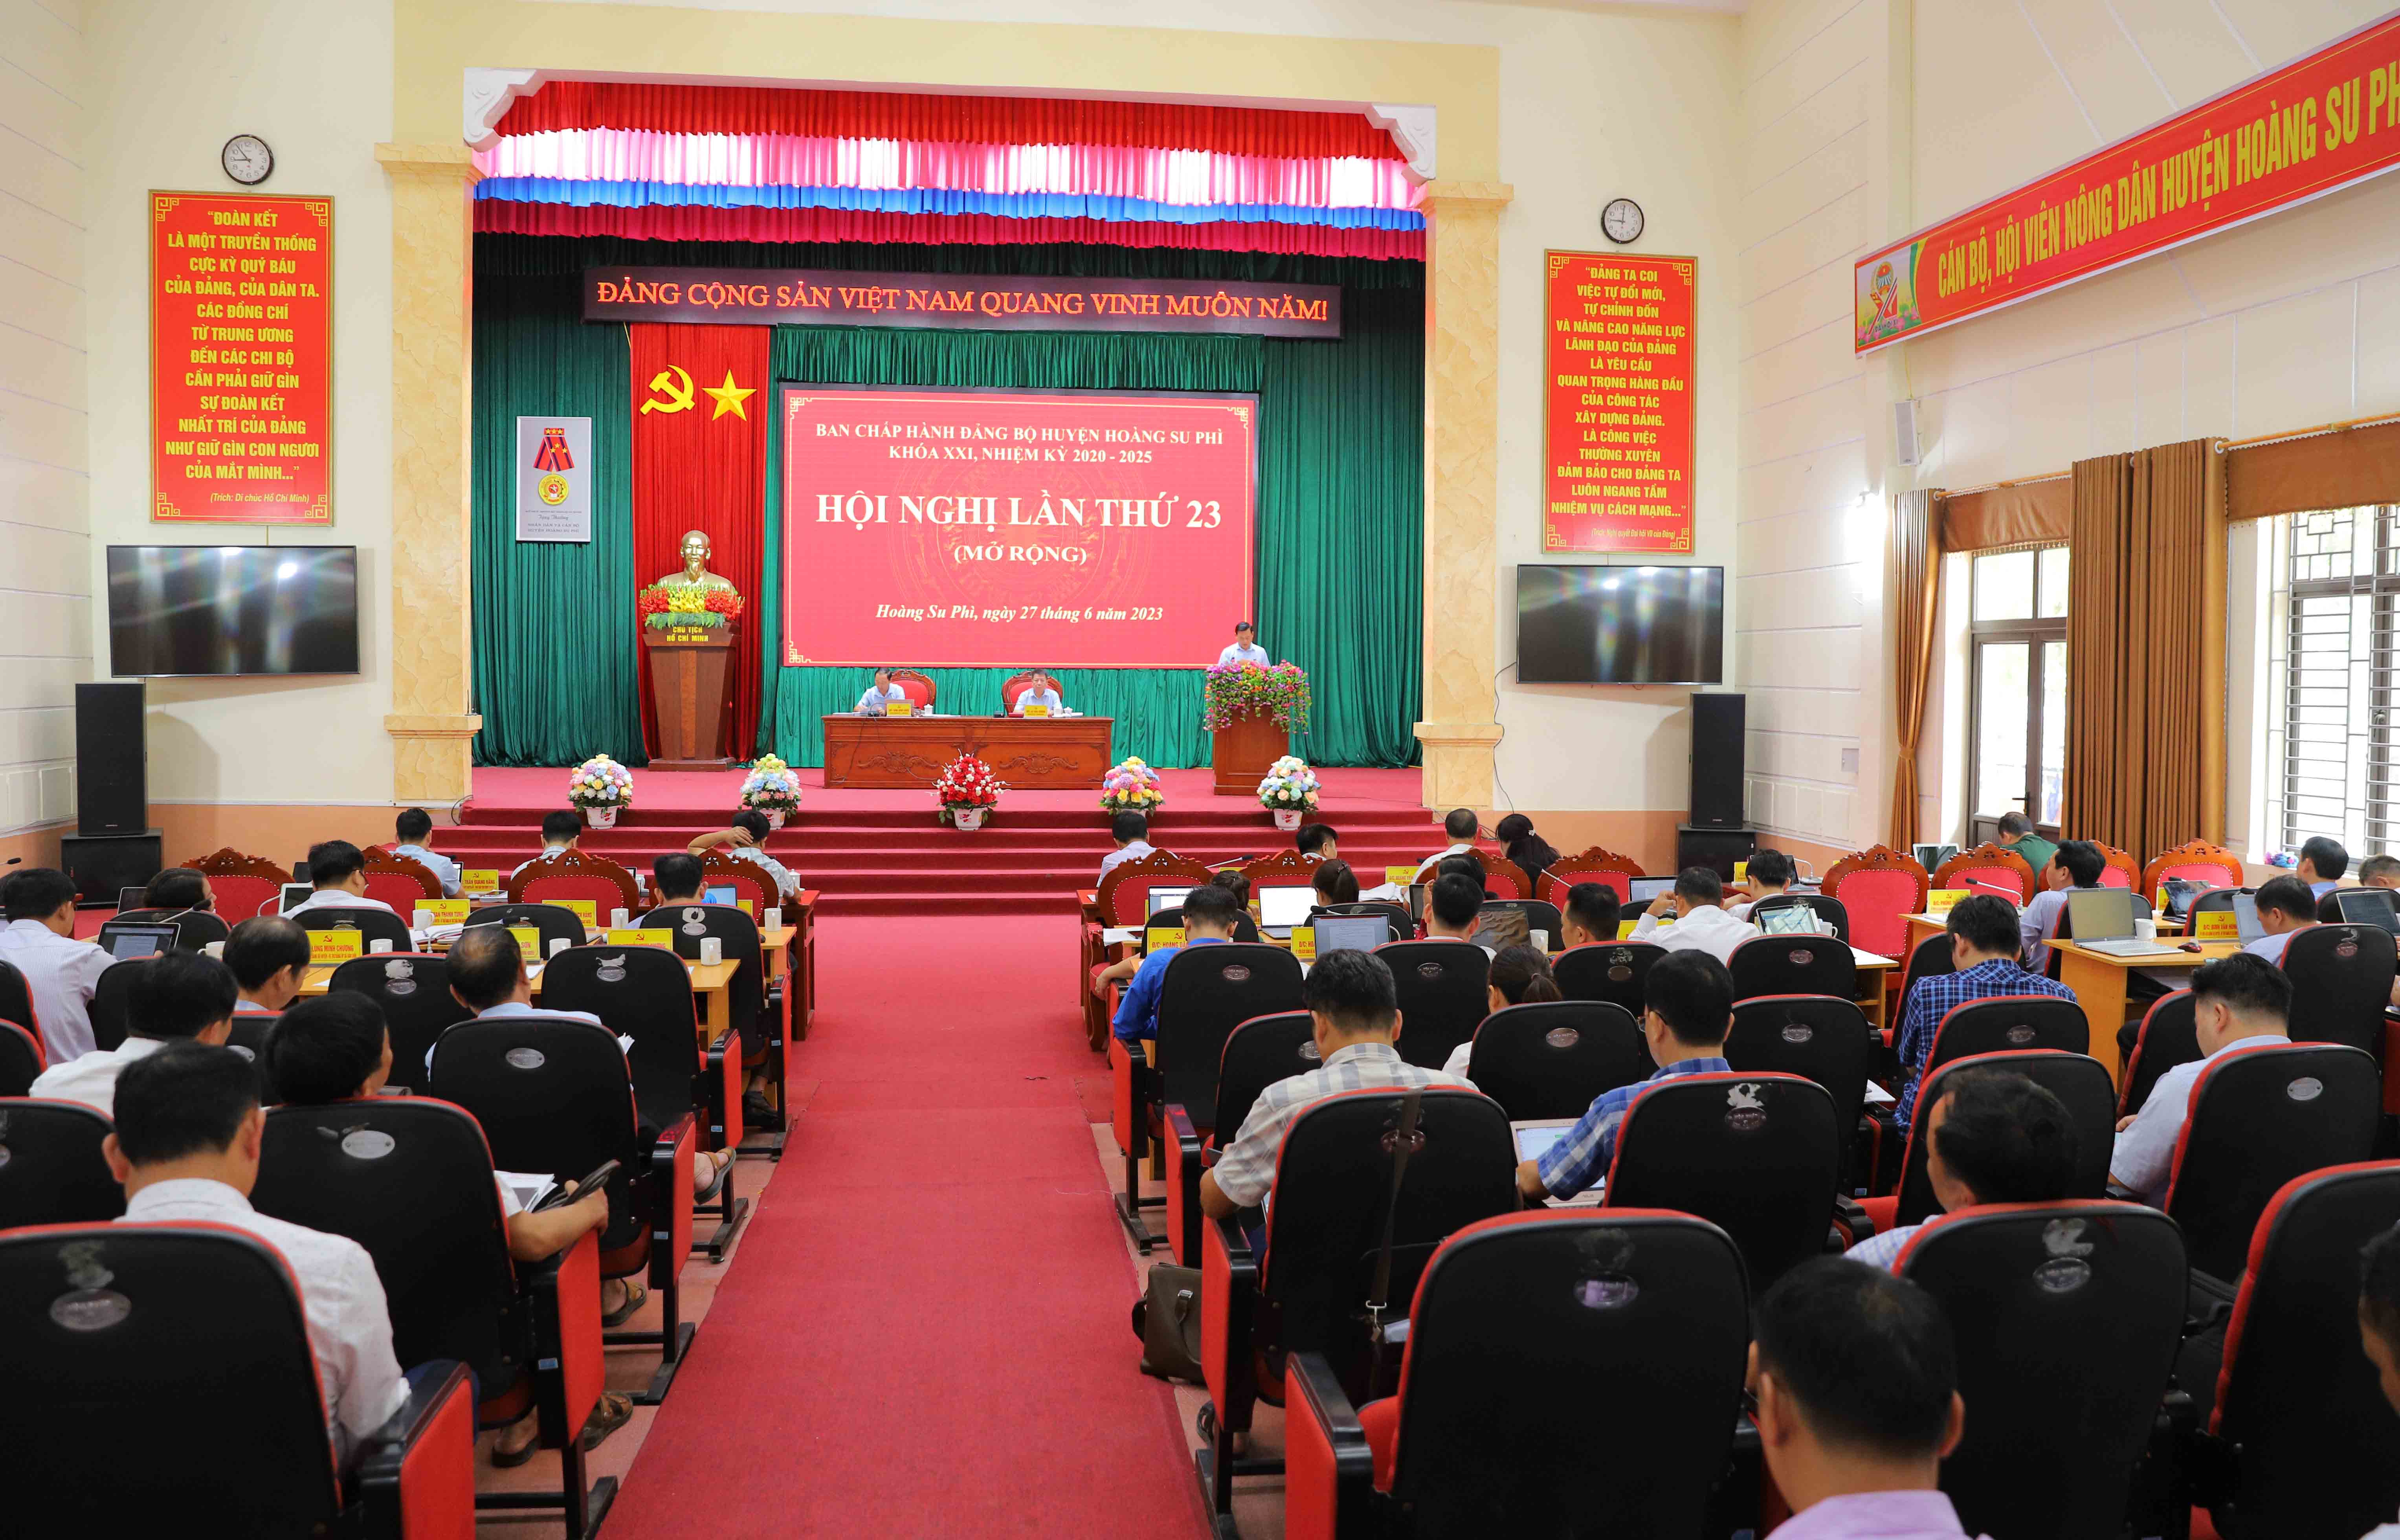 Hội nghị Ban chấp hành Đảng bộ huyện Hoàng Su Phì lần thứ 23